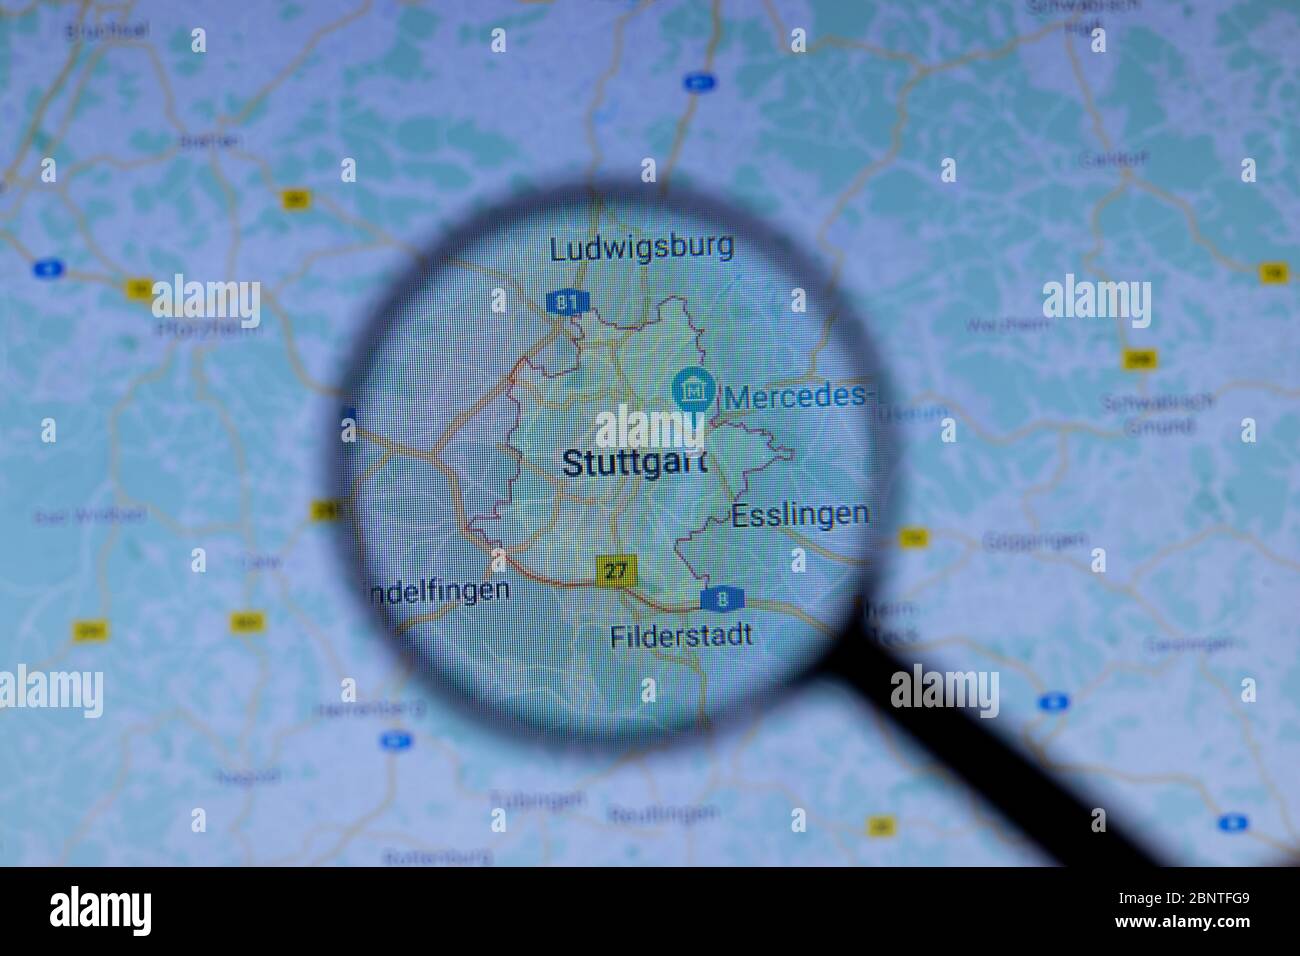 Los Angeles, Kalifornien, USA - 1. Mai 2020: Stuttgart Stadt Stadtname mit Standort auf der Karte Nahaufnahme, illustrativ Editorial Stockfoto